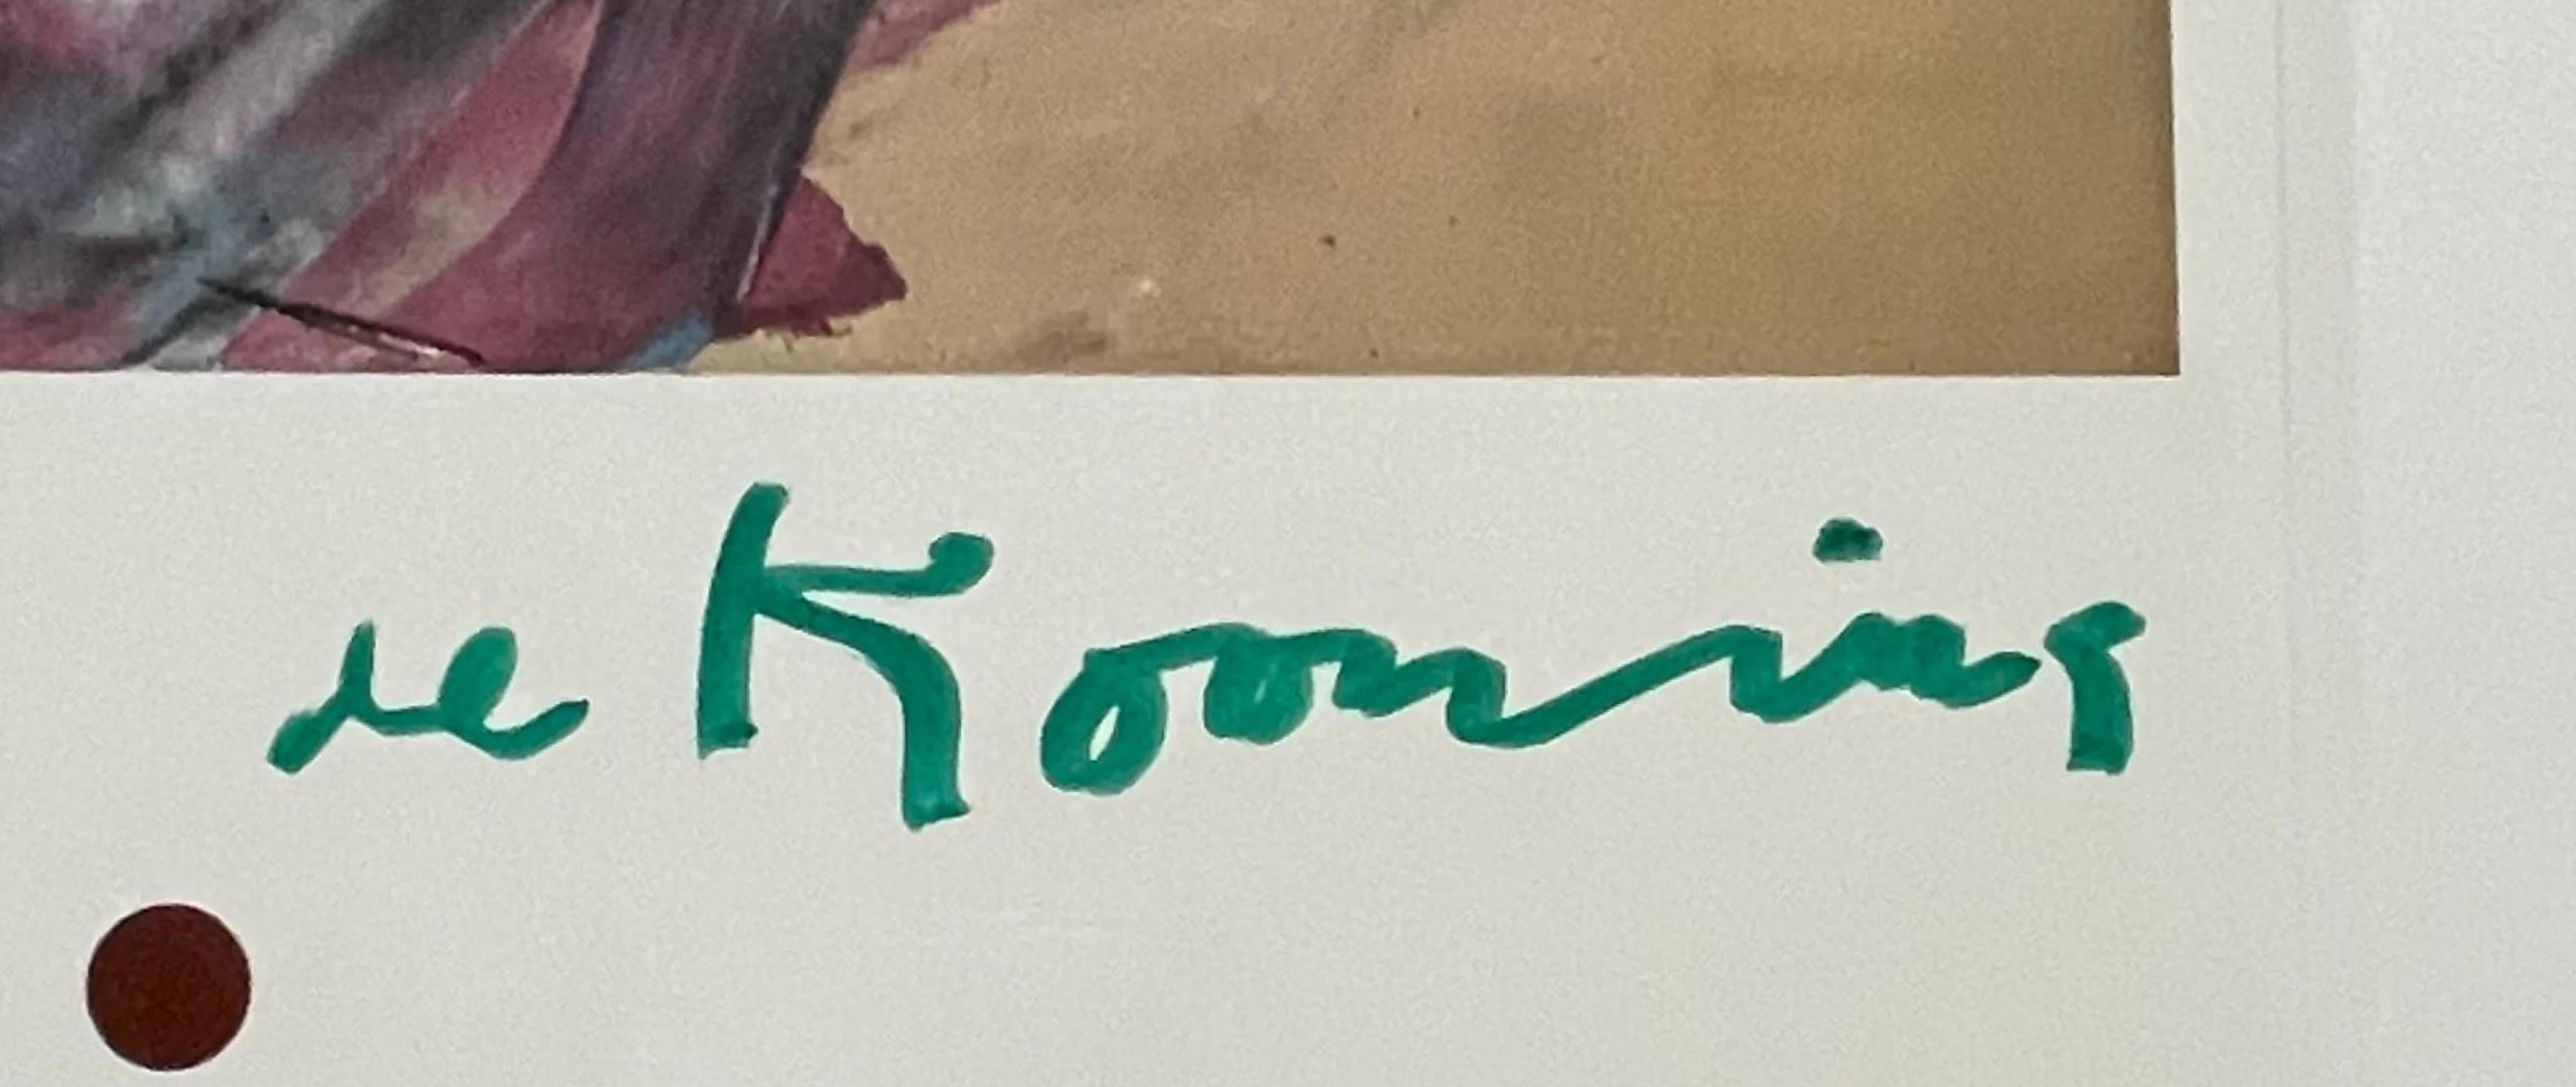 Willem de Kooning
de Kooning in East Hamptons (signé à la main), provenant de la succession d'Alan York, 1978
Affiche lithographique offset (signée par de Kooning)
Signé au feutre vert sur le recto.
Publié par National Endowment for the Arts,